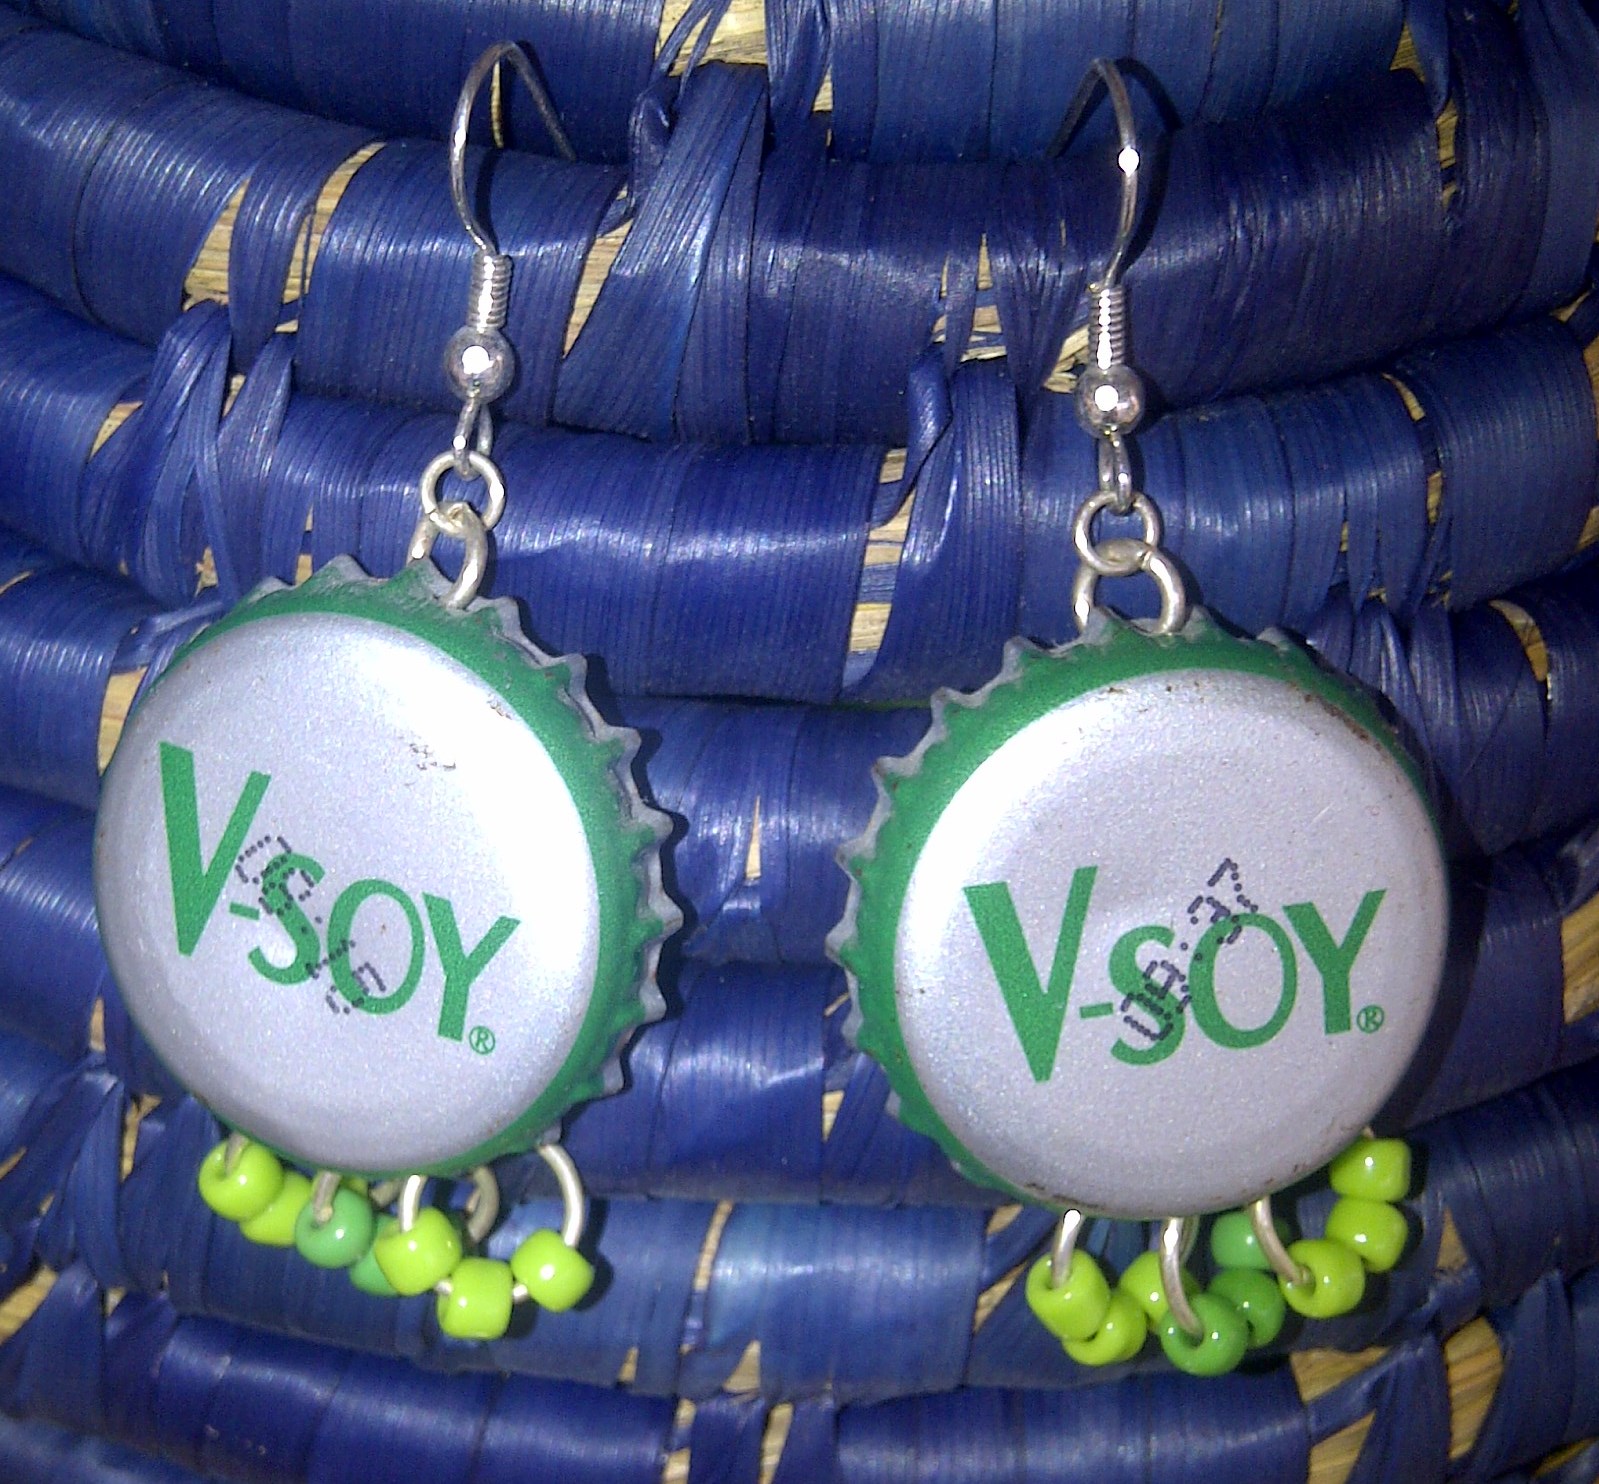 Recycled V-Soy bottle cap earrings